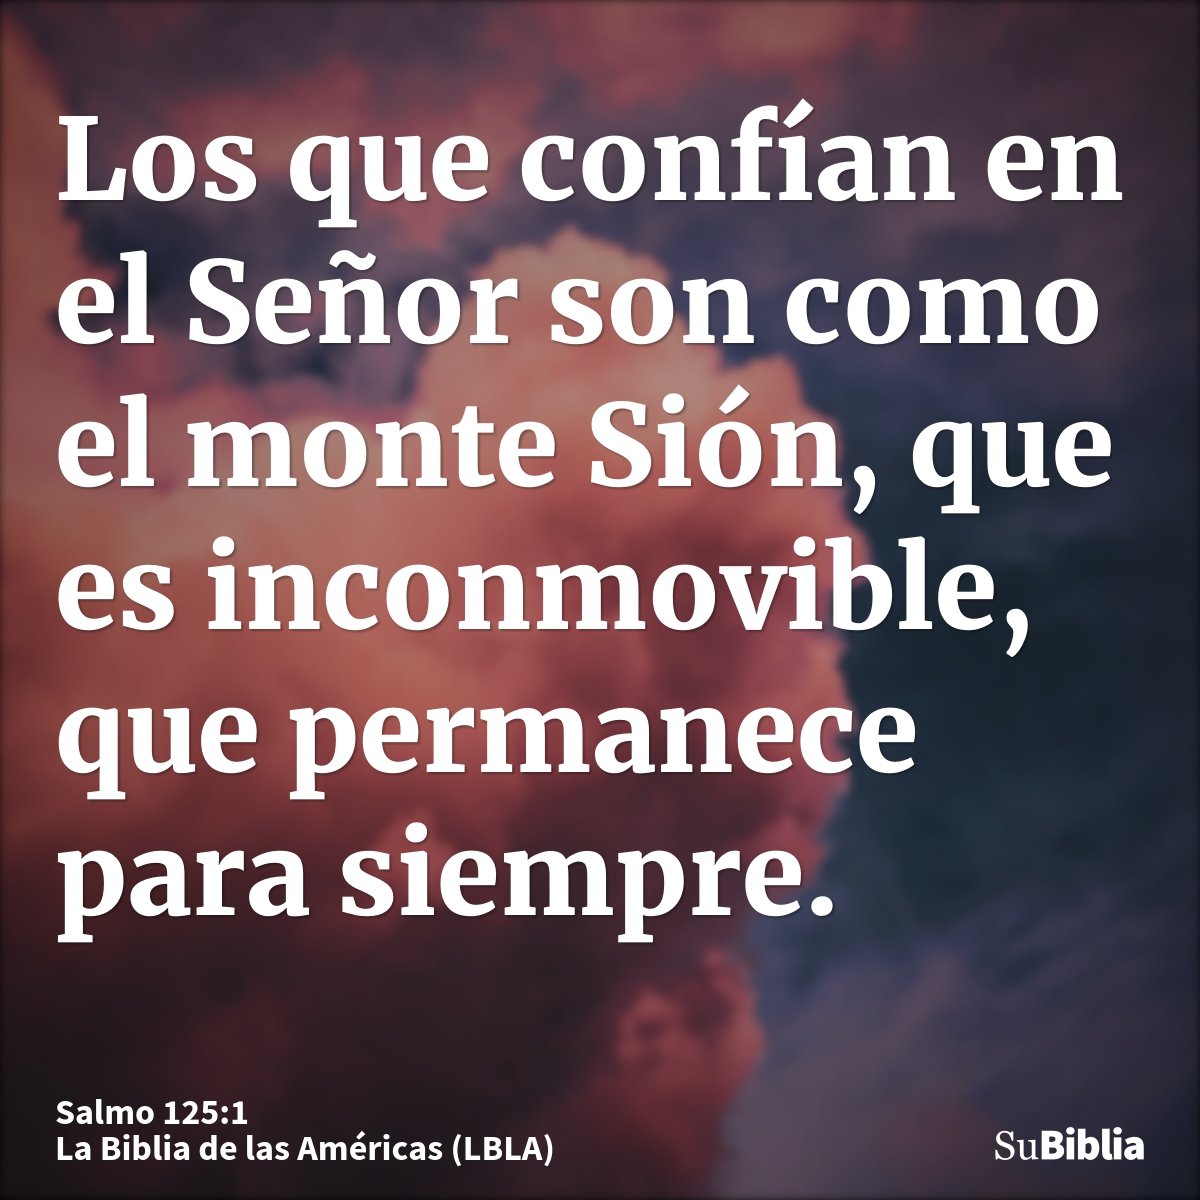 Los que confían en el Señor son como el monte Sión, que es inconmovible, que permanece para siempre.